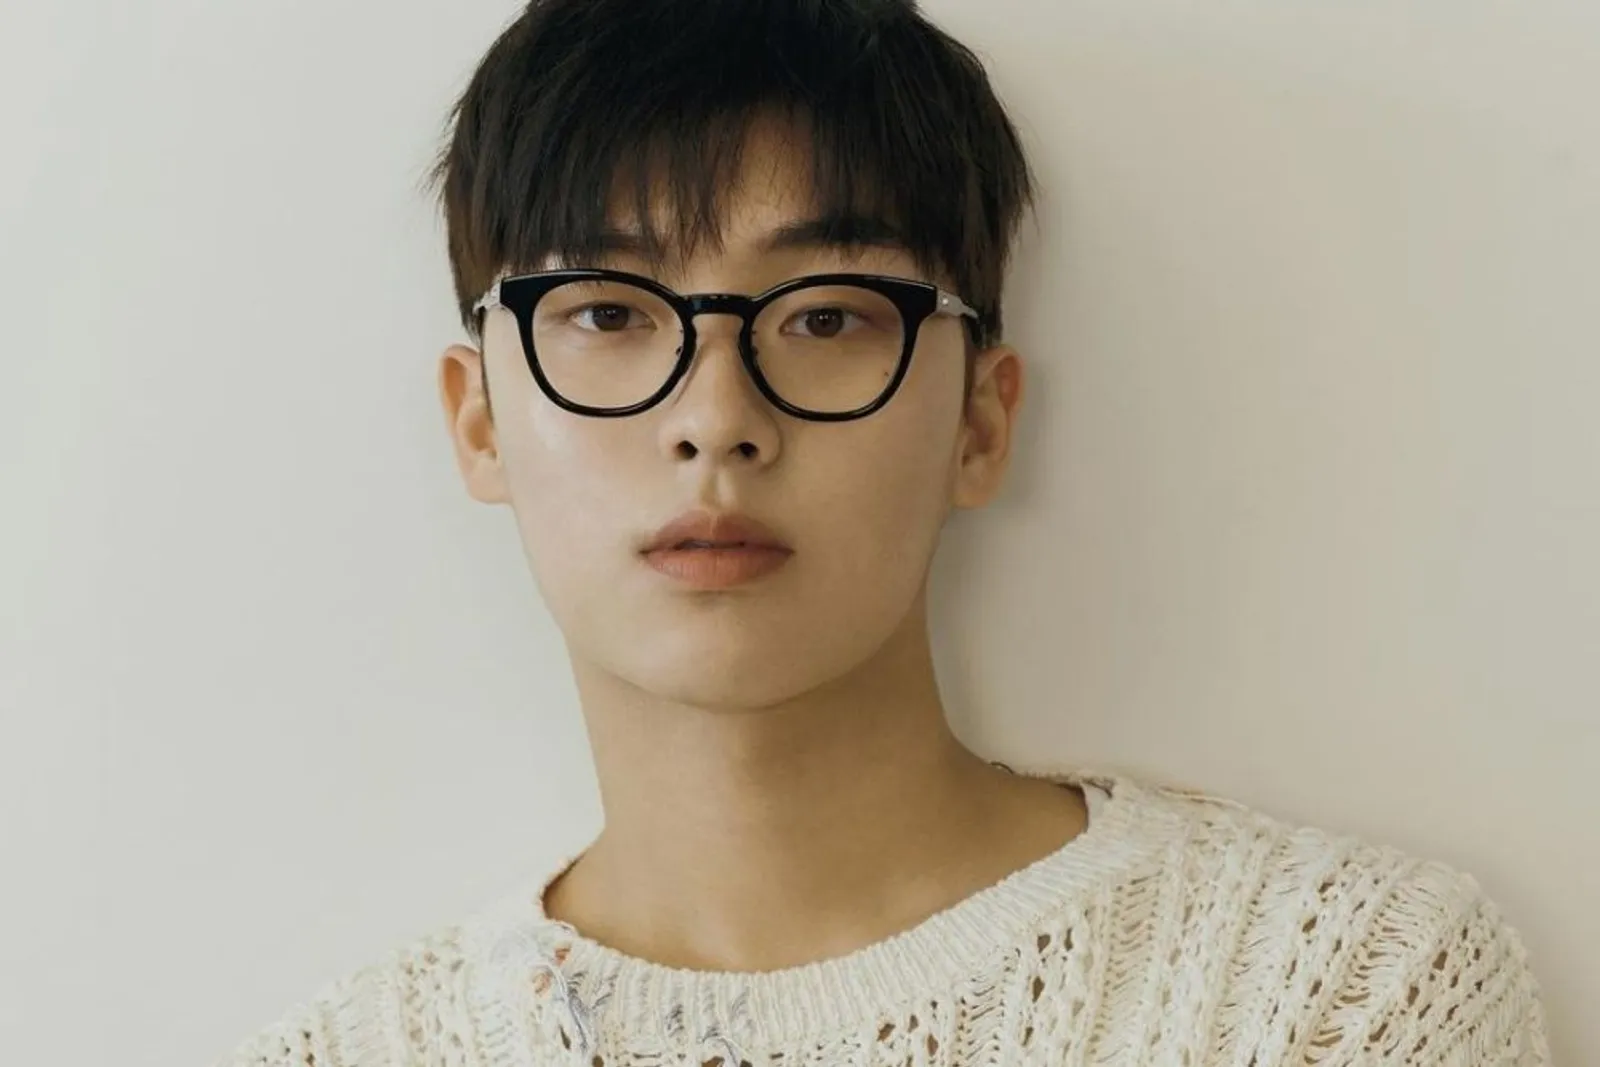 Profil Choi Hyun Wook: Biodata, Karier, dan Drama yang Dibintanginya